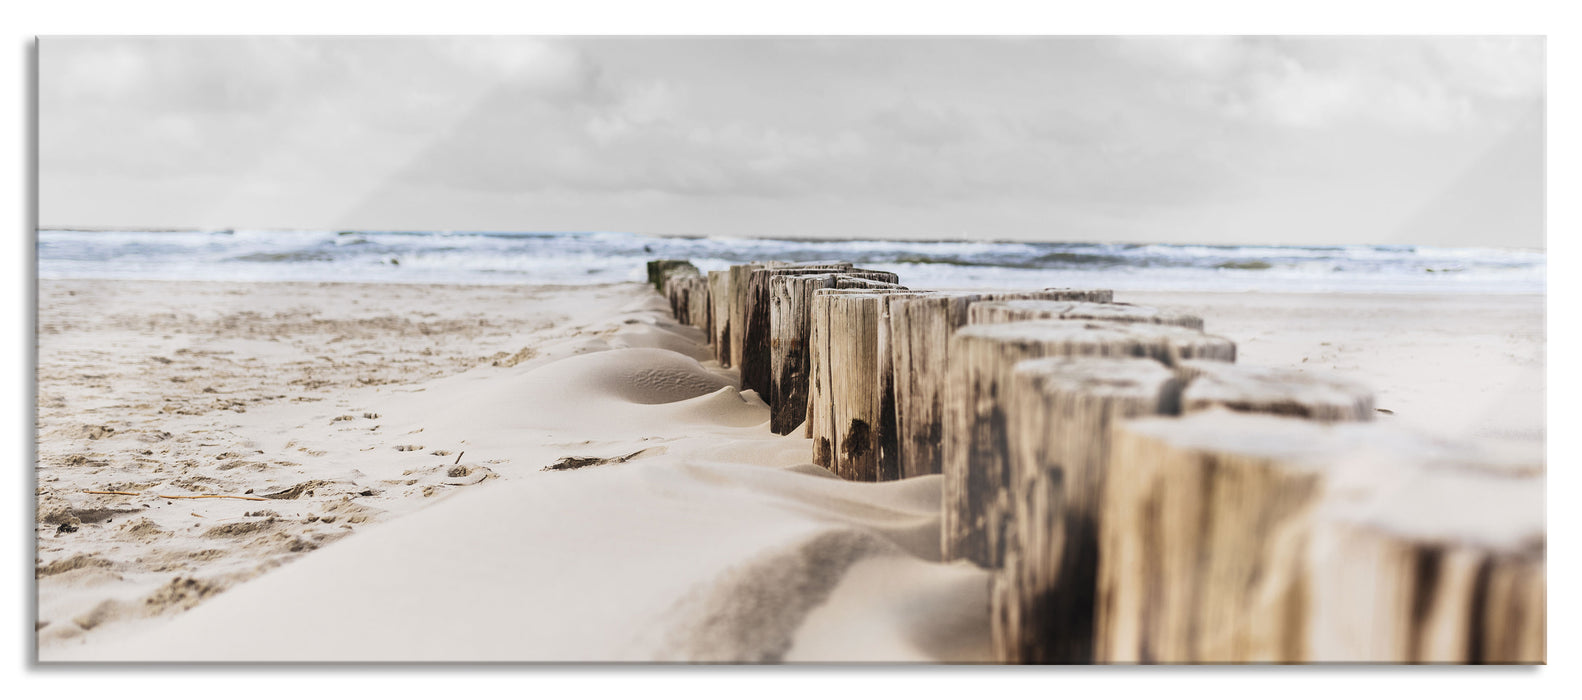 Nahaufnahme Steg aus Holzpföcken am Meer B&W Detail, Glasbild Panorama